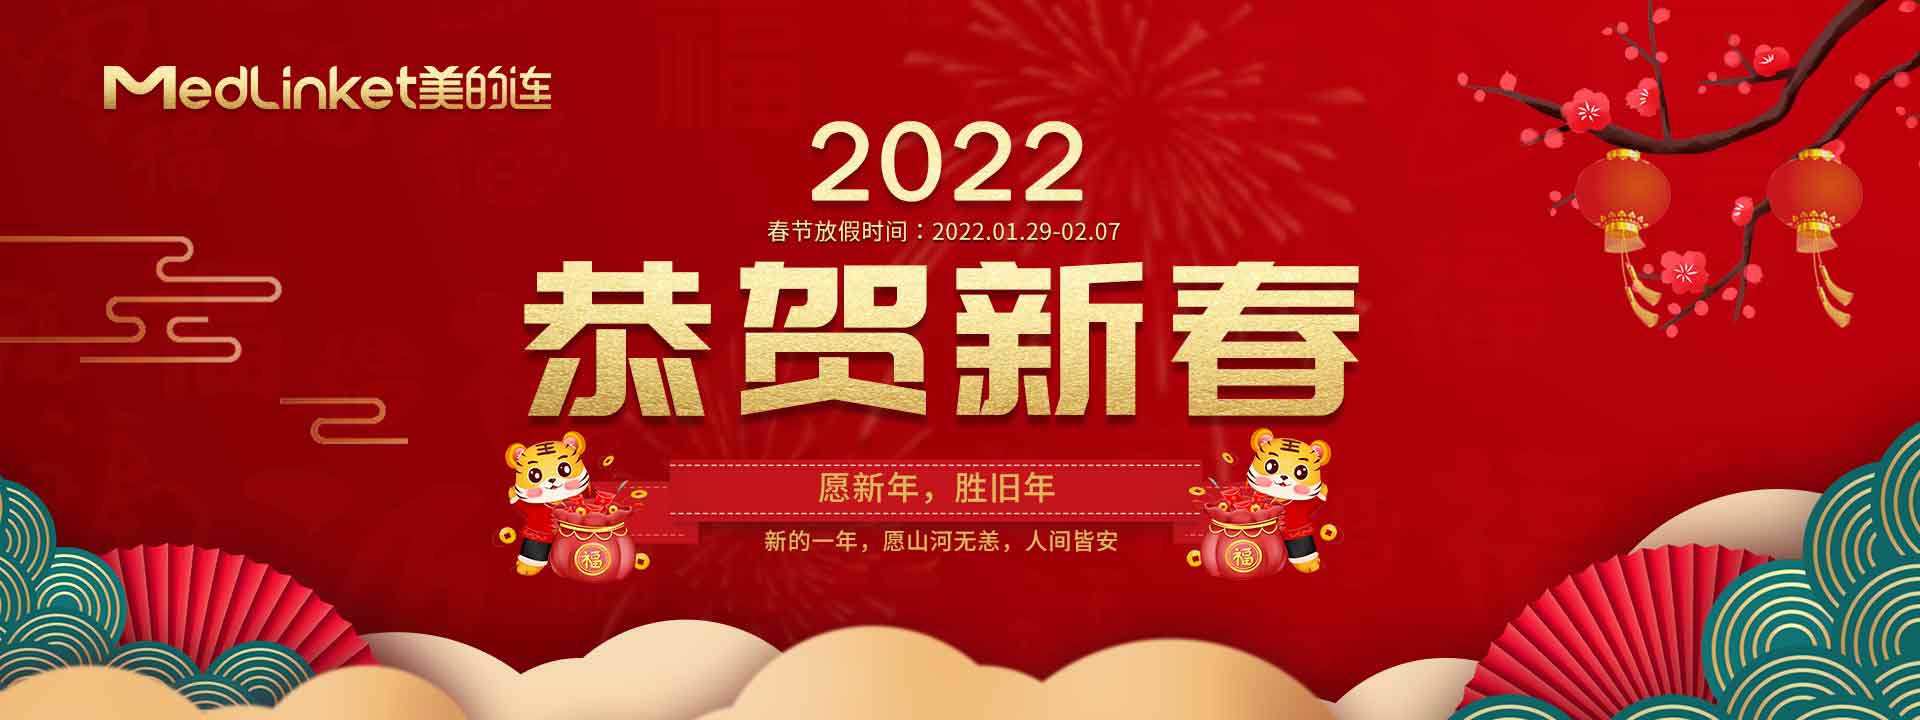 2022恭贺新春banner_1920x720